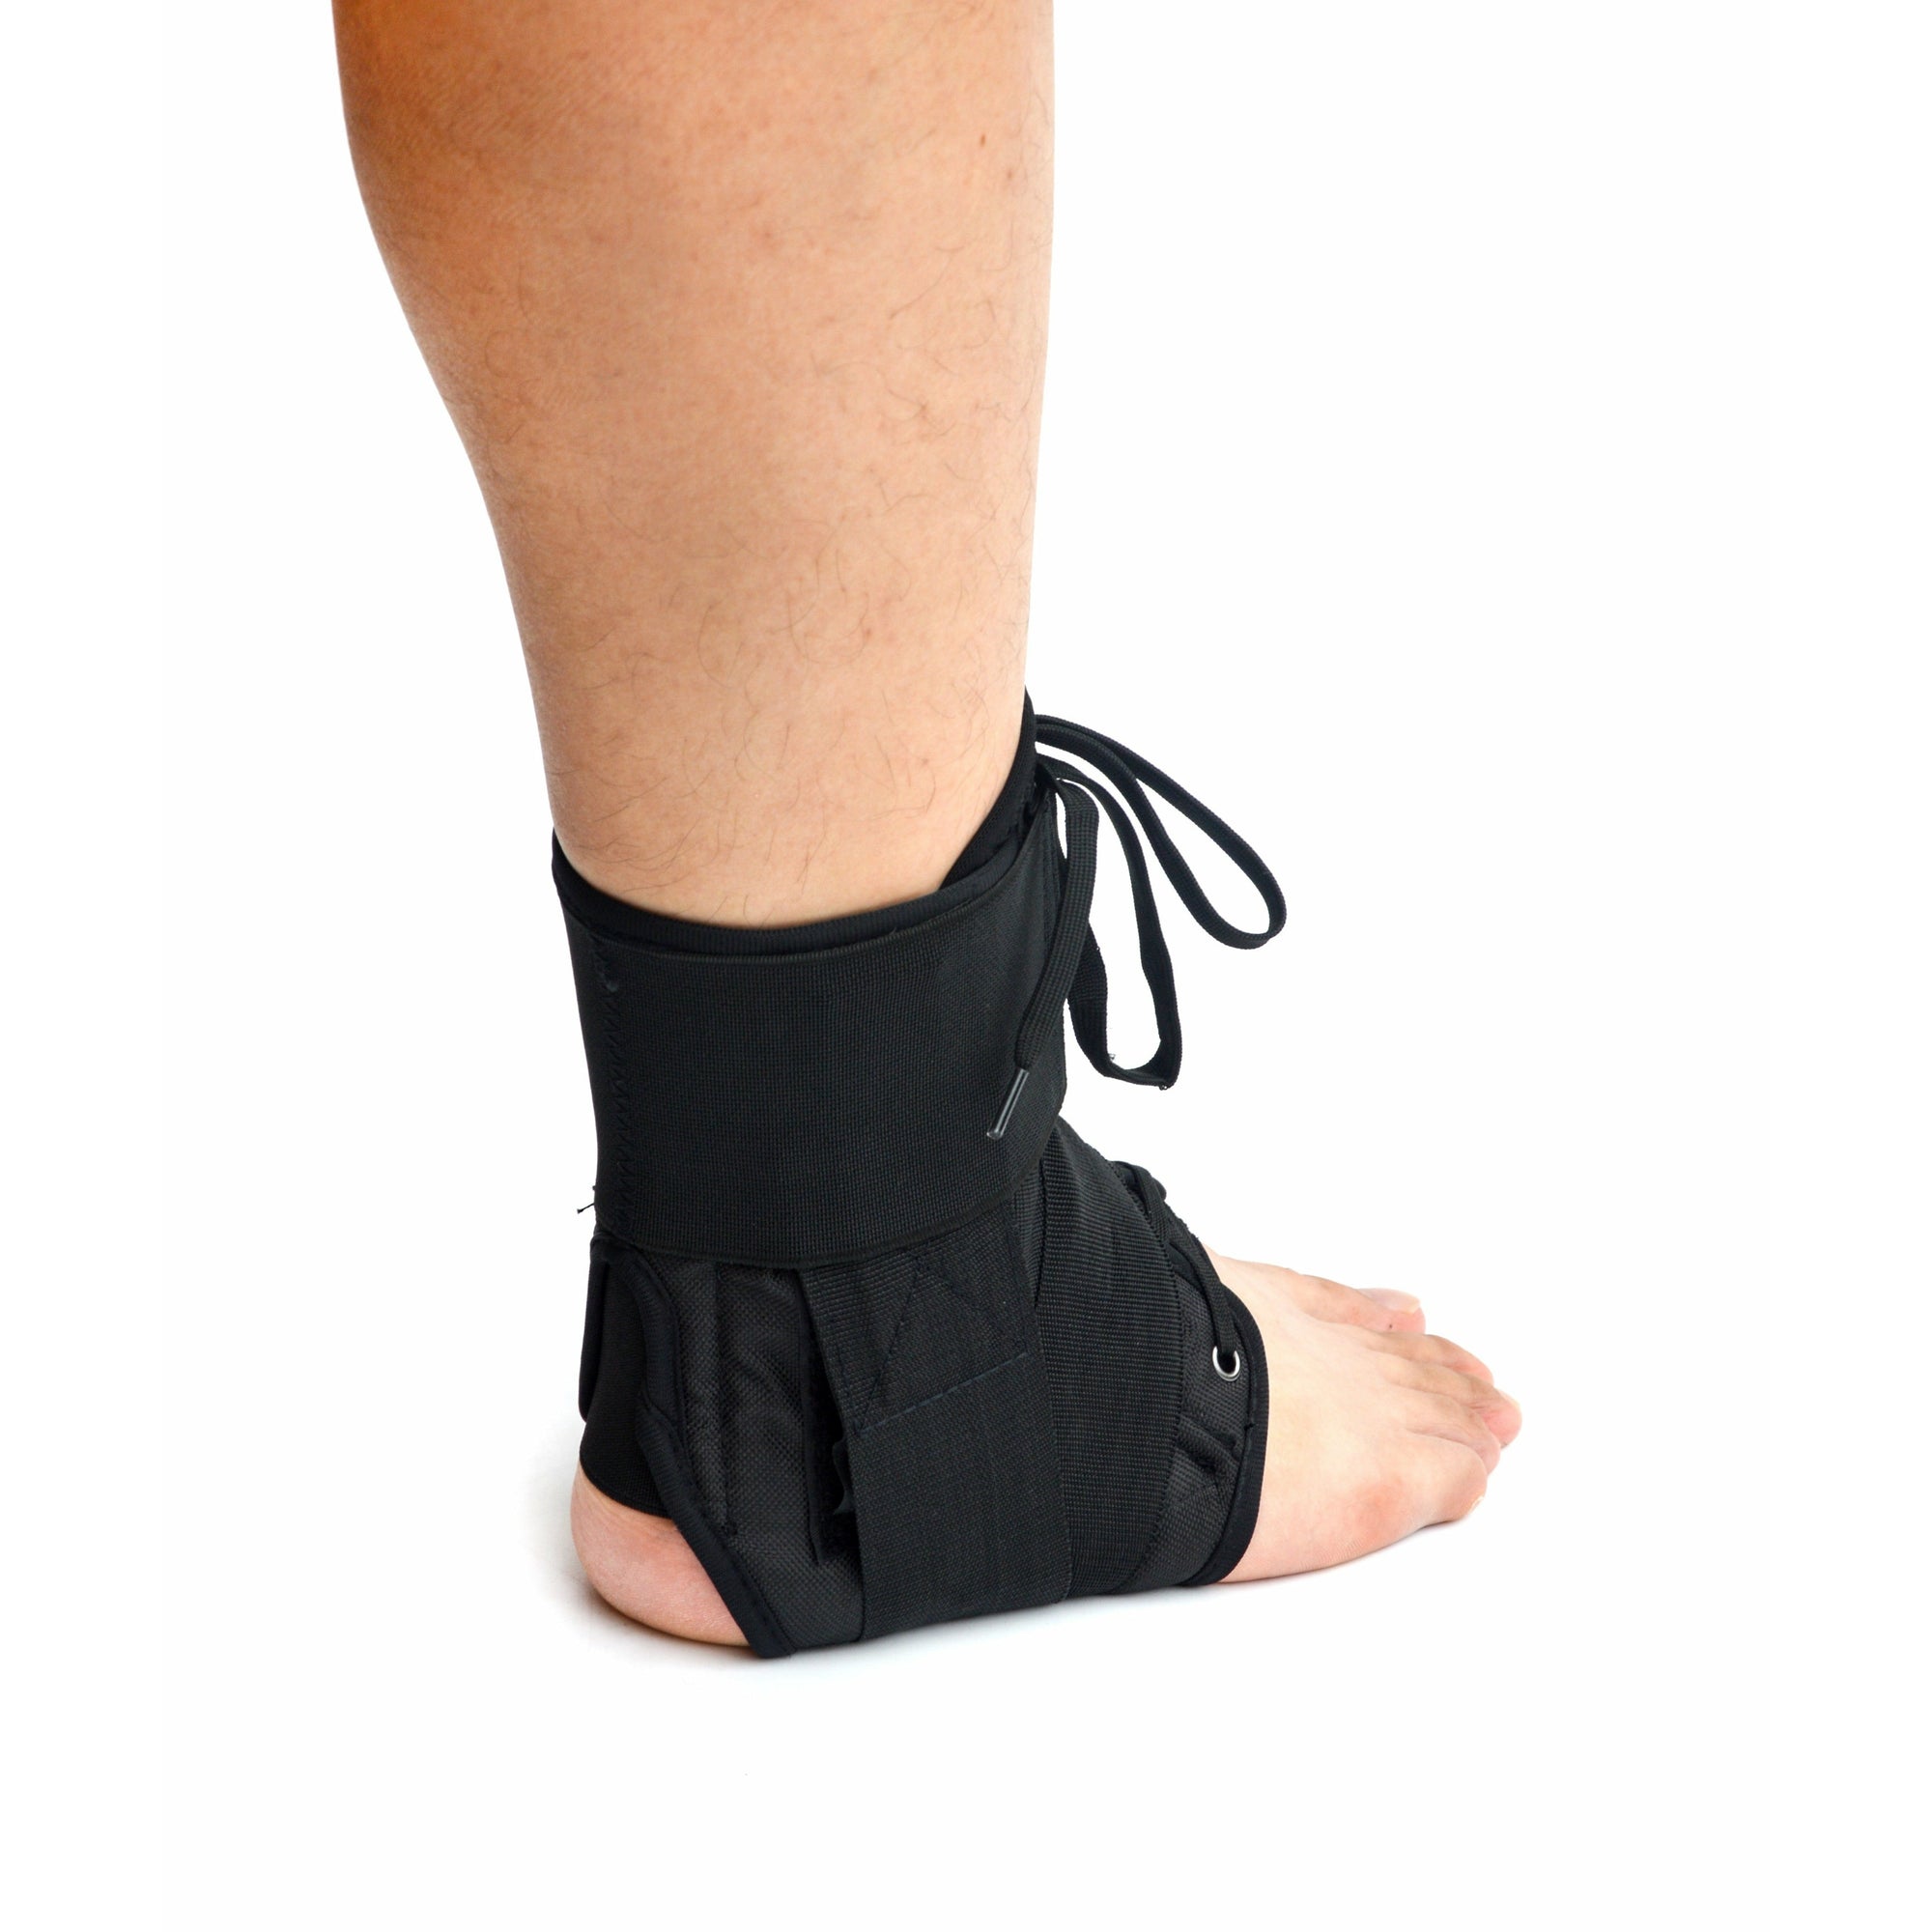 Ankle Brace Stabilizer - Ankle sprain & instability - MEDIUM